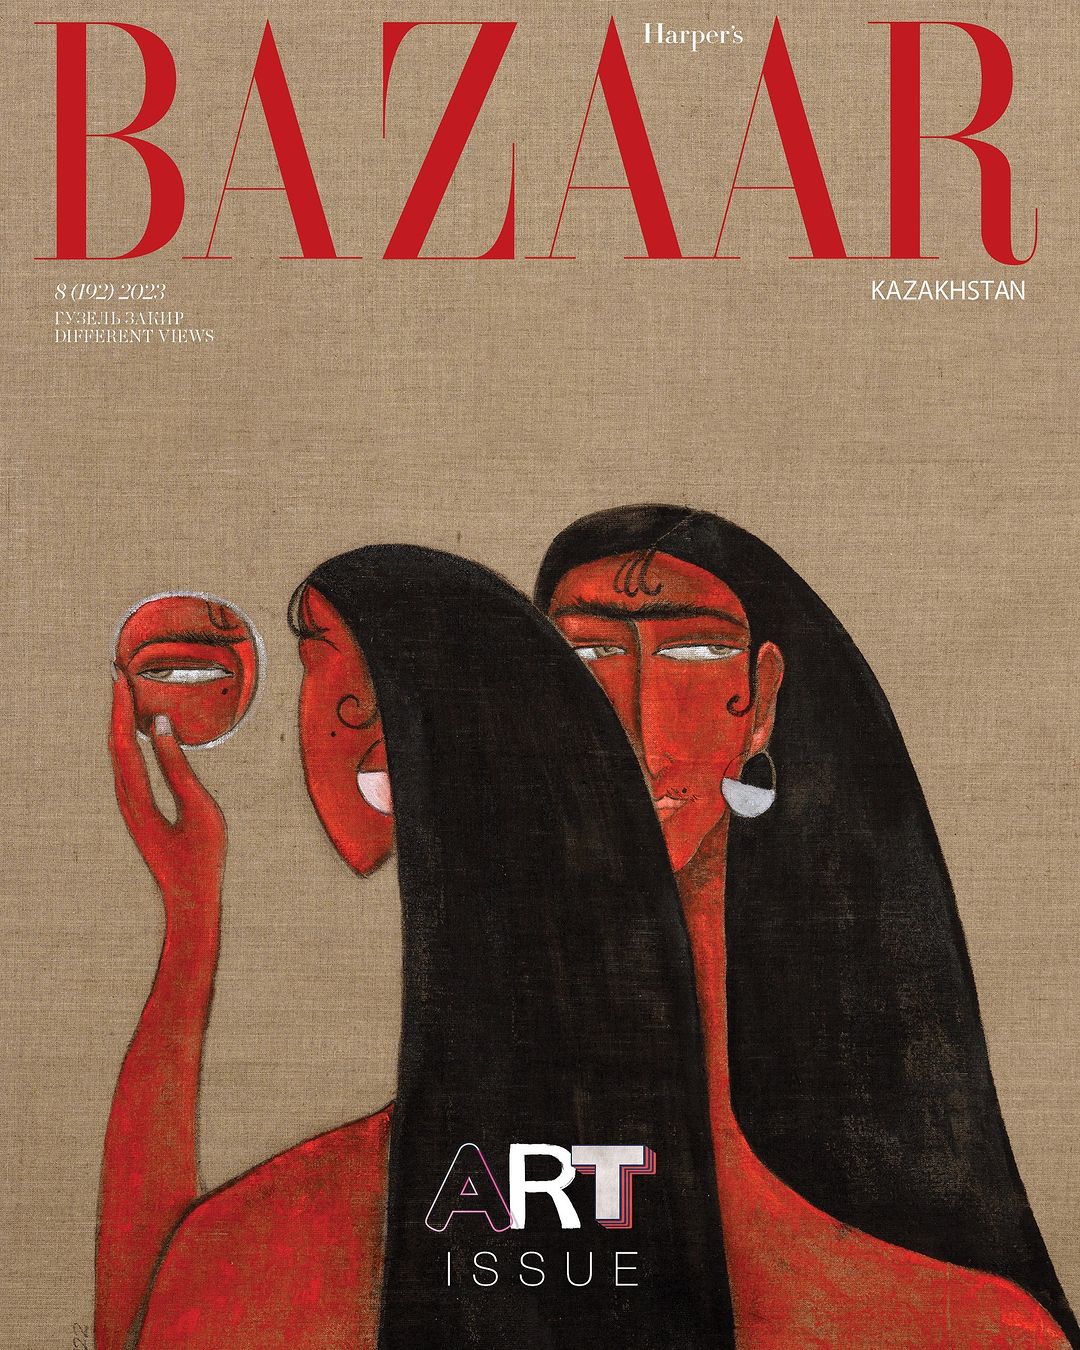 В Алматы представили уникальный Art-номер издания Harper’s BAZAAR Kazakhstan